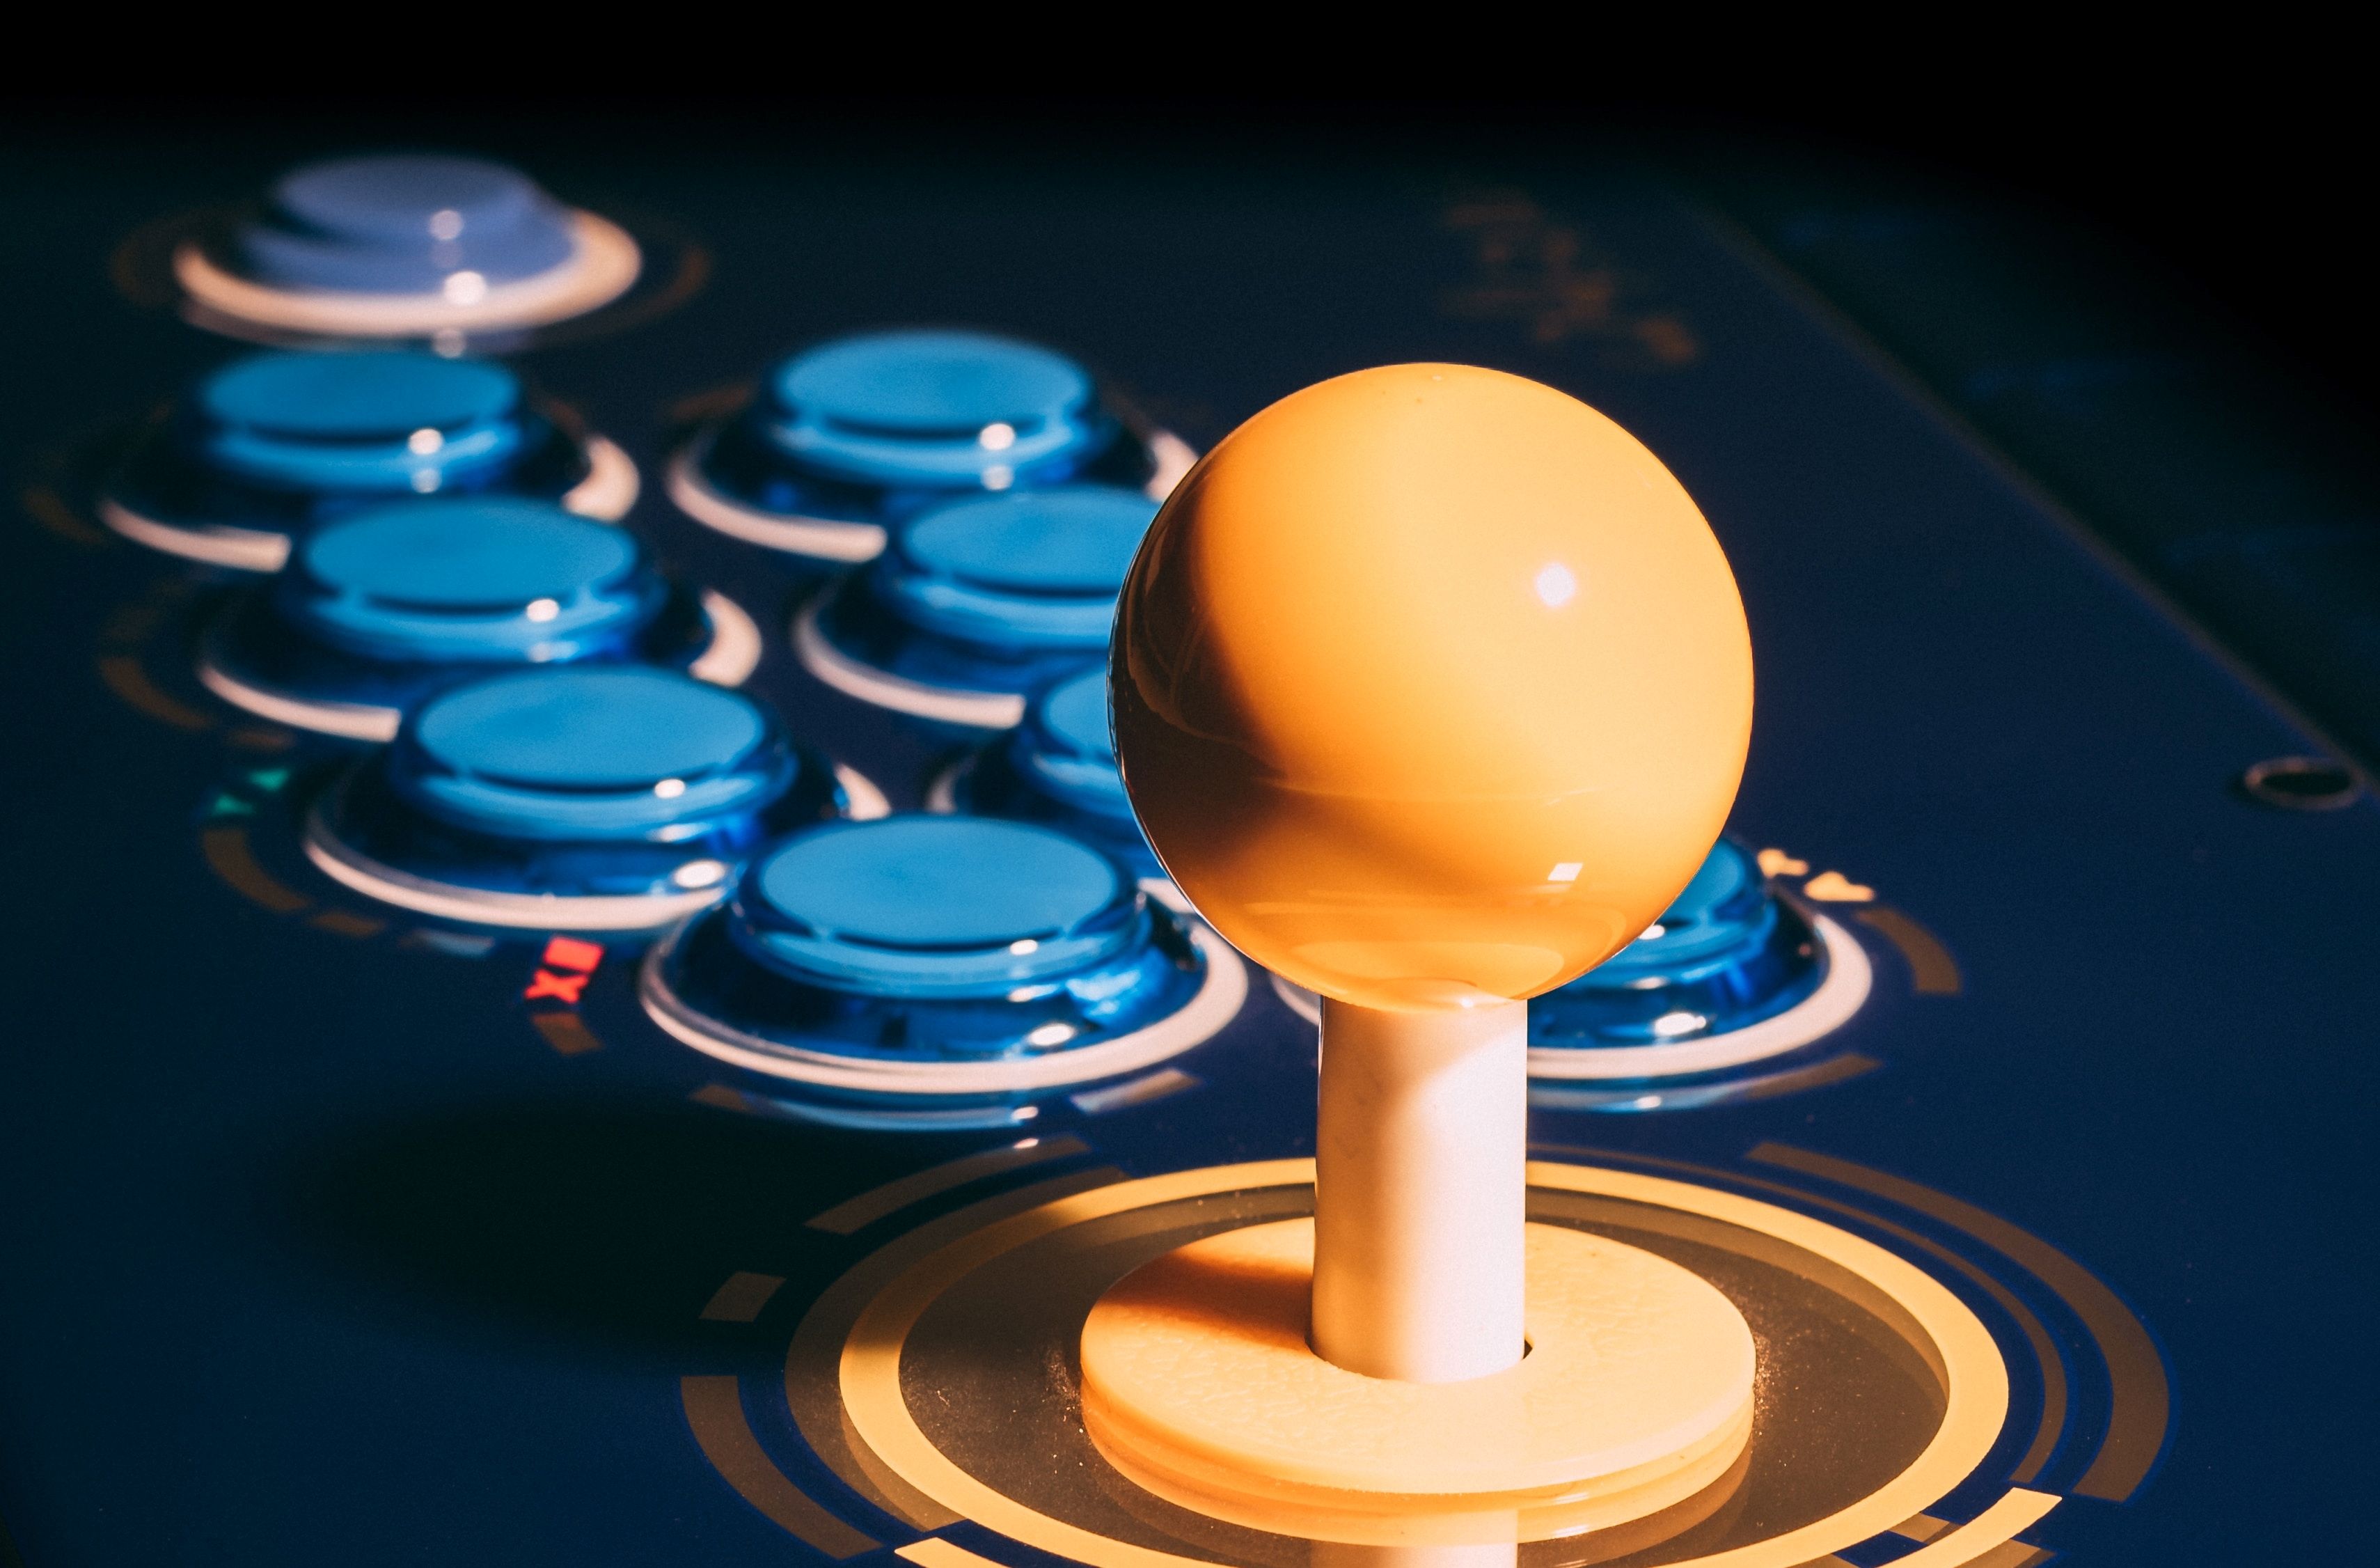 Một thanh trò chơi điện tử màu vàng với các nút nhập liệu màu xanh lam